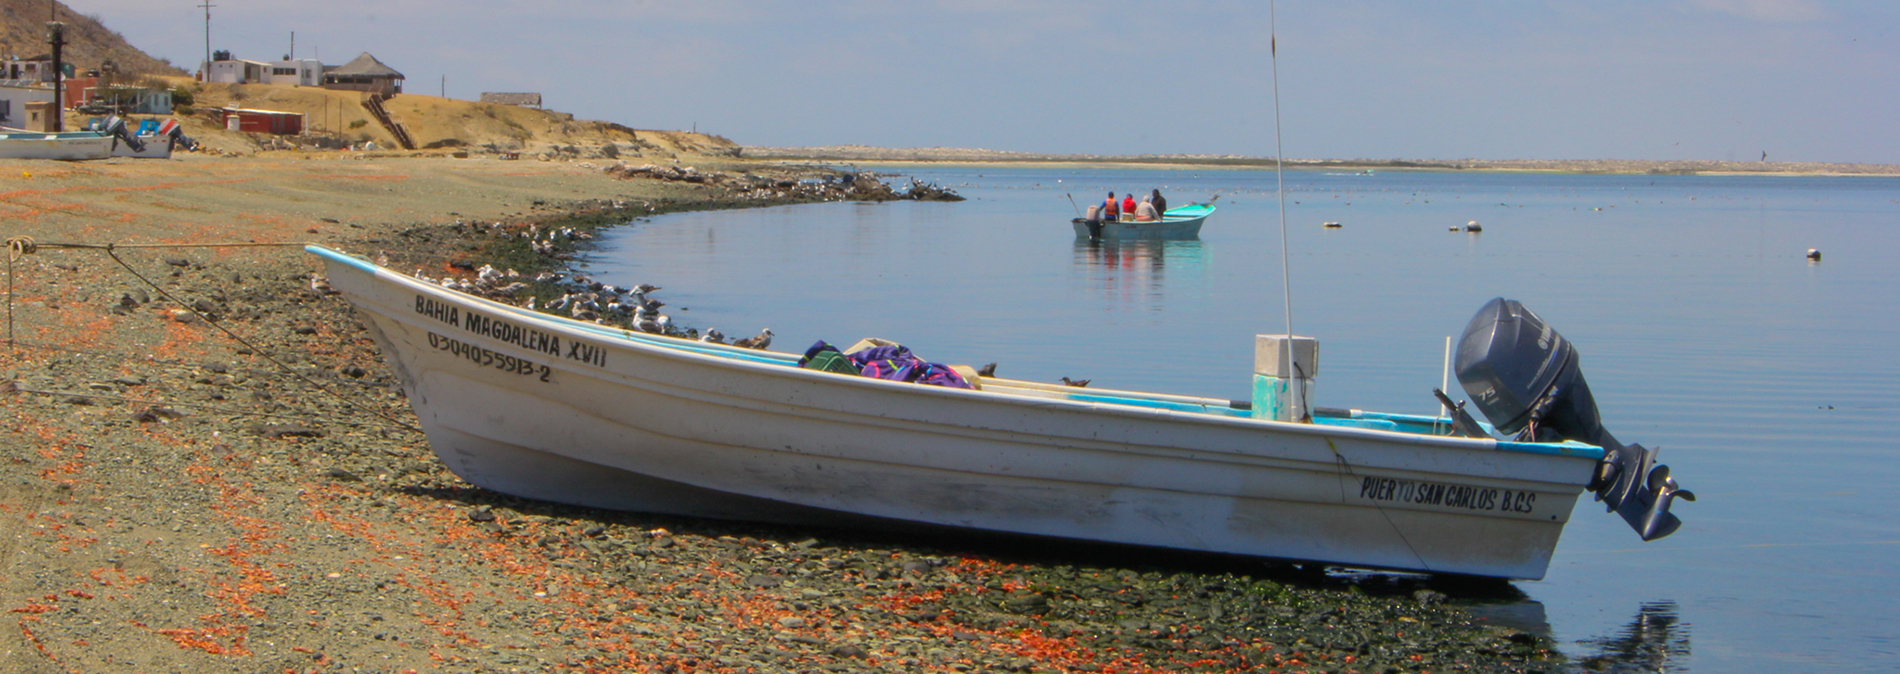 Doble jornada y riesgo, así es la vigilancia pesquera en Bahía Magdalena